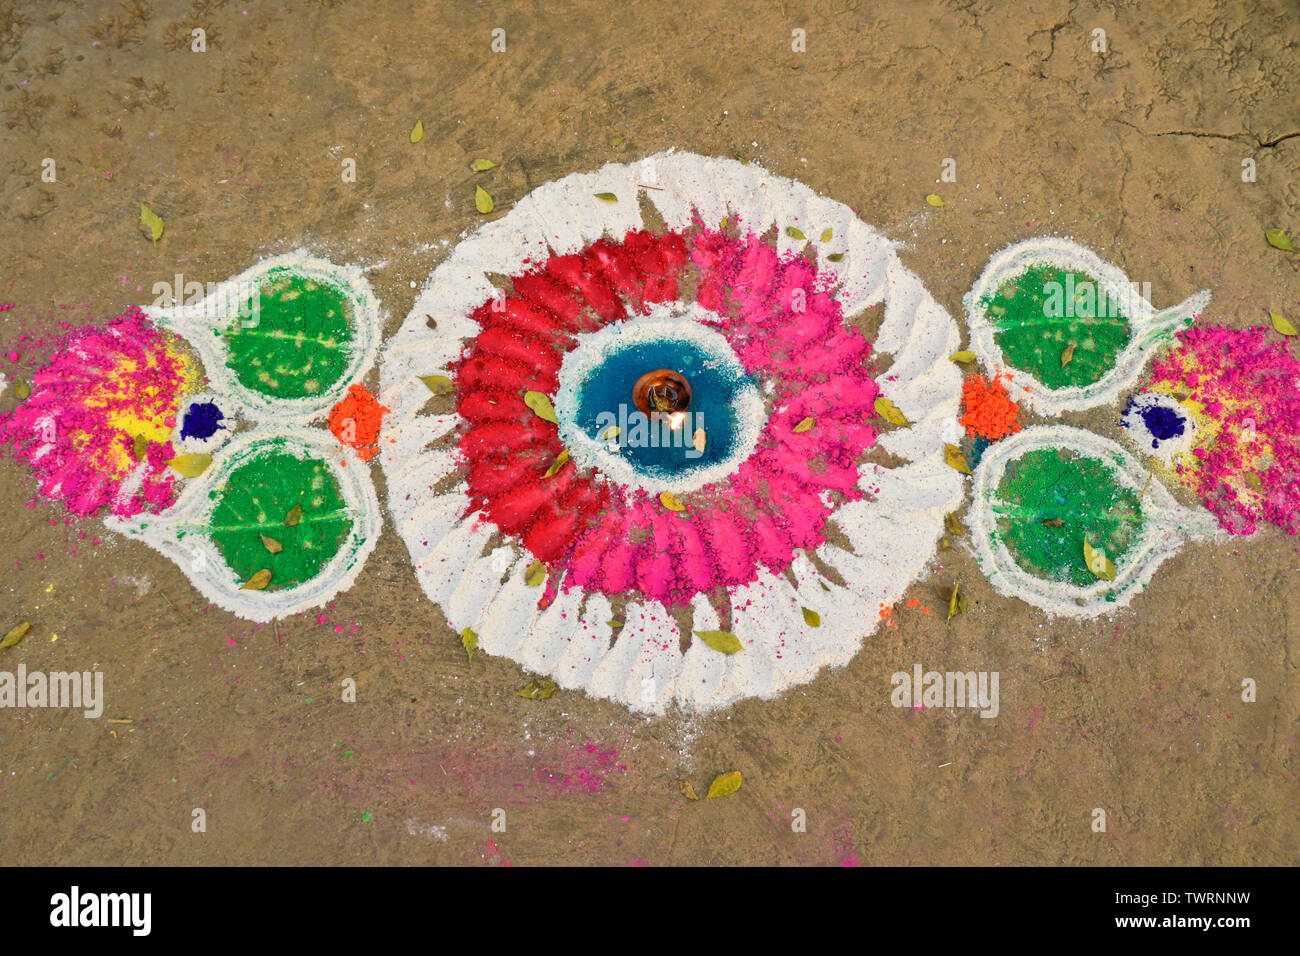 Design realizzato di polvere colorata, con burro di masterizzazione lampada in centro, nella celebrazione del Diwali holiday, Nepal Foto Stock